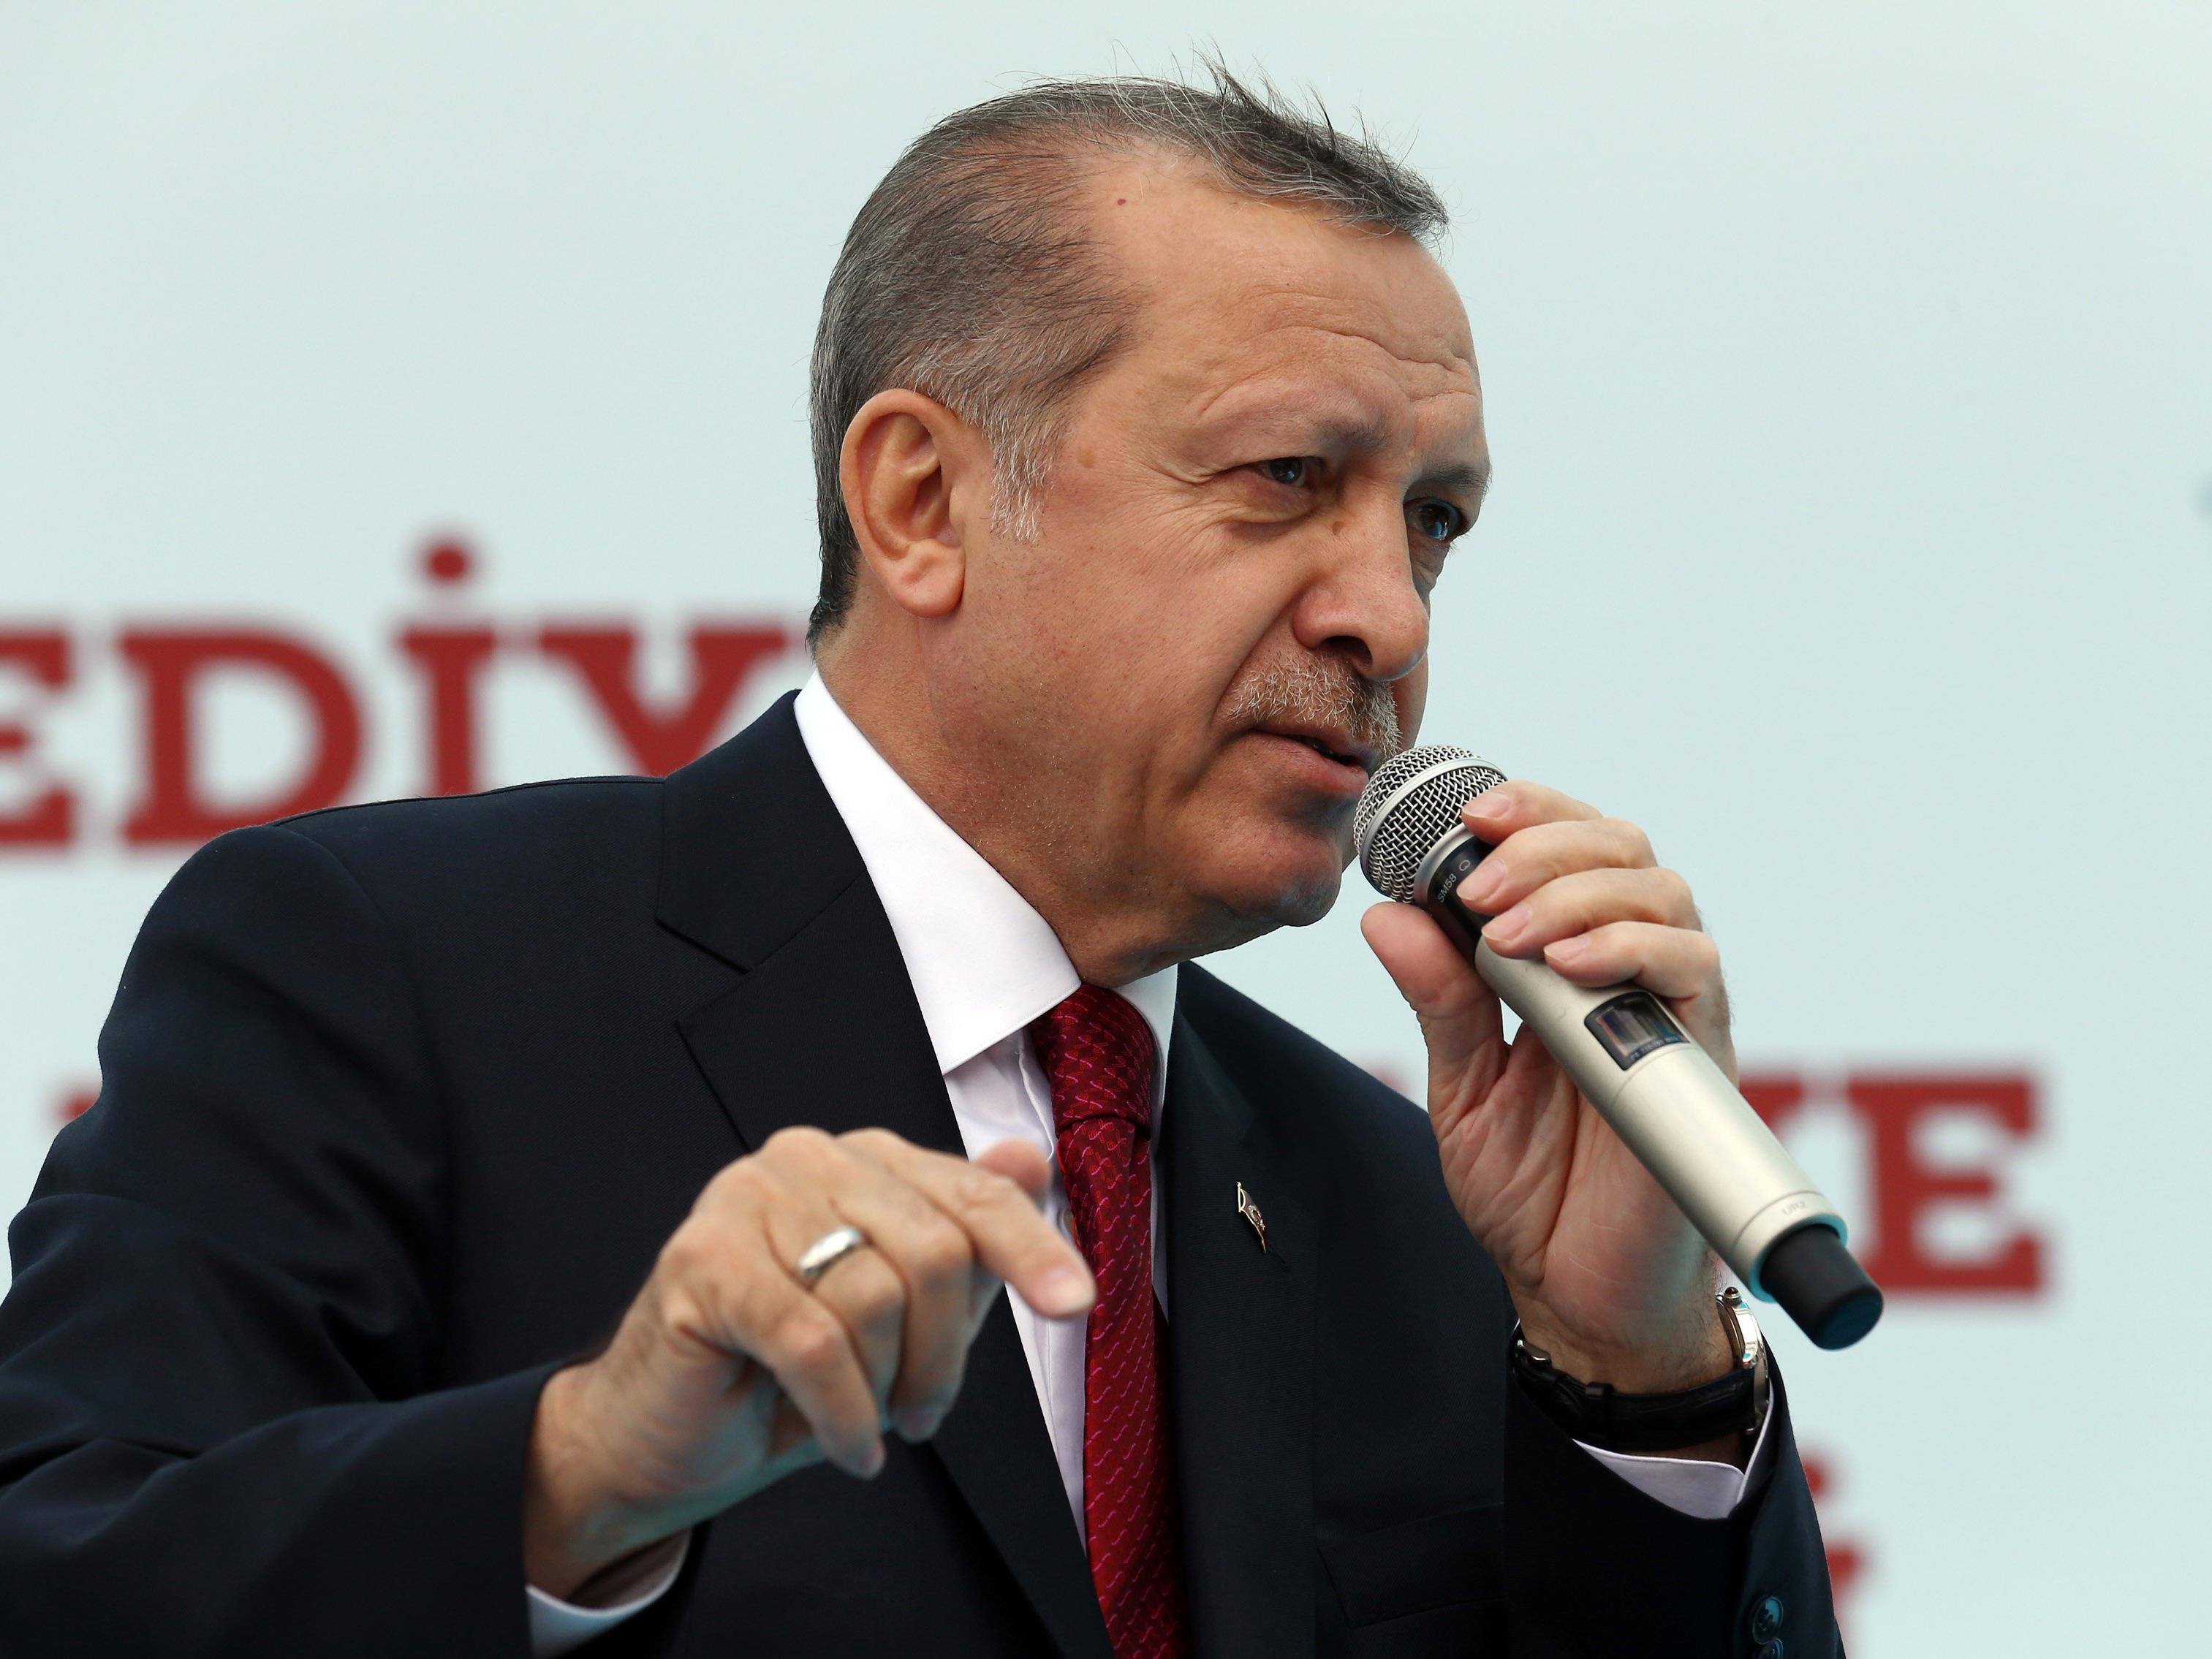 Davutoglus Rückzug schürt Sorgen vor einem weiteren Machtzuwachs für Erdogan, der die Türkei zu einem Präsidialsystem umbauen will.